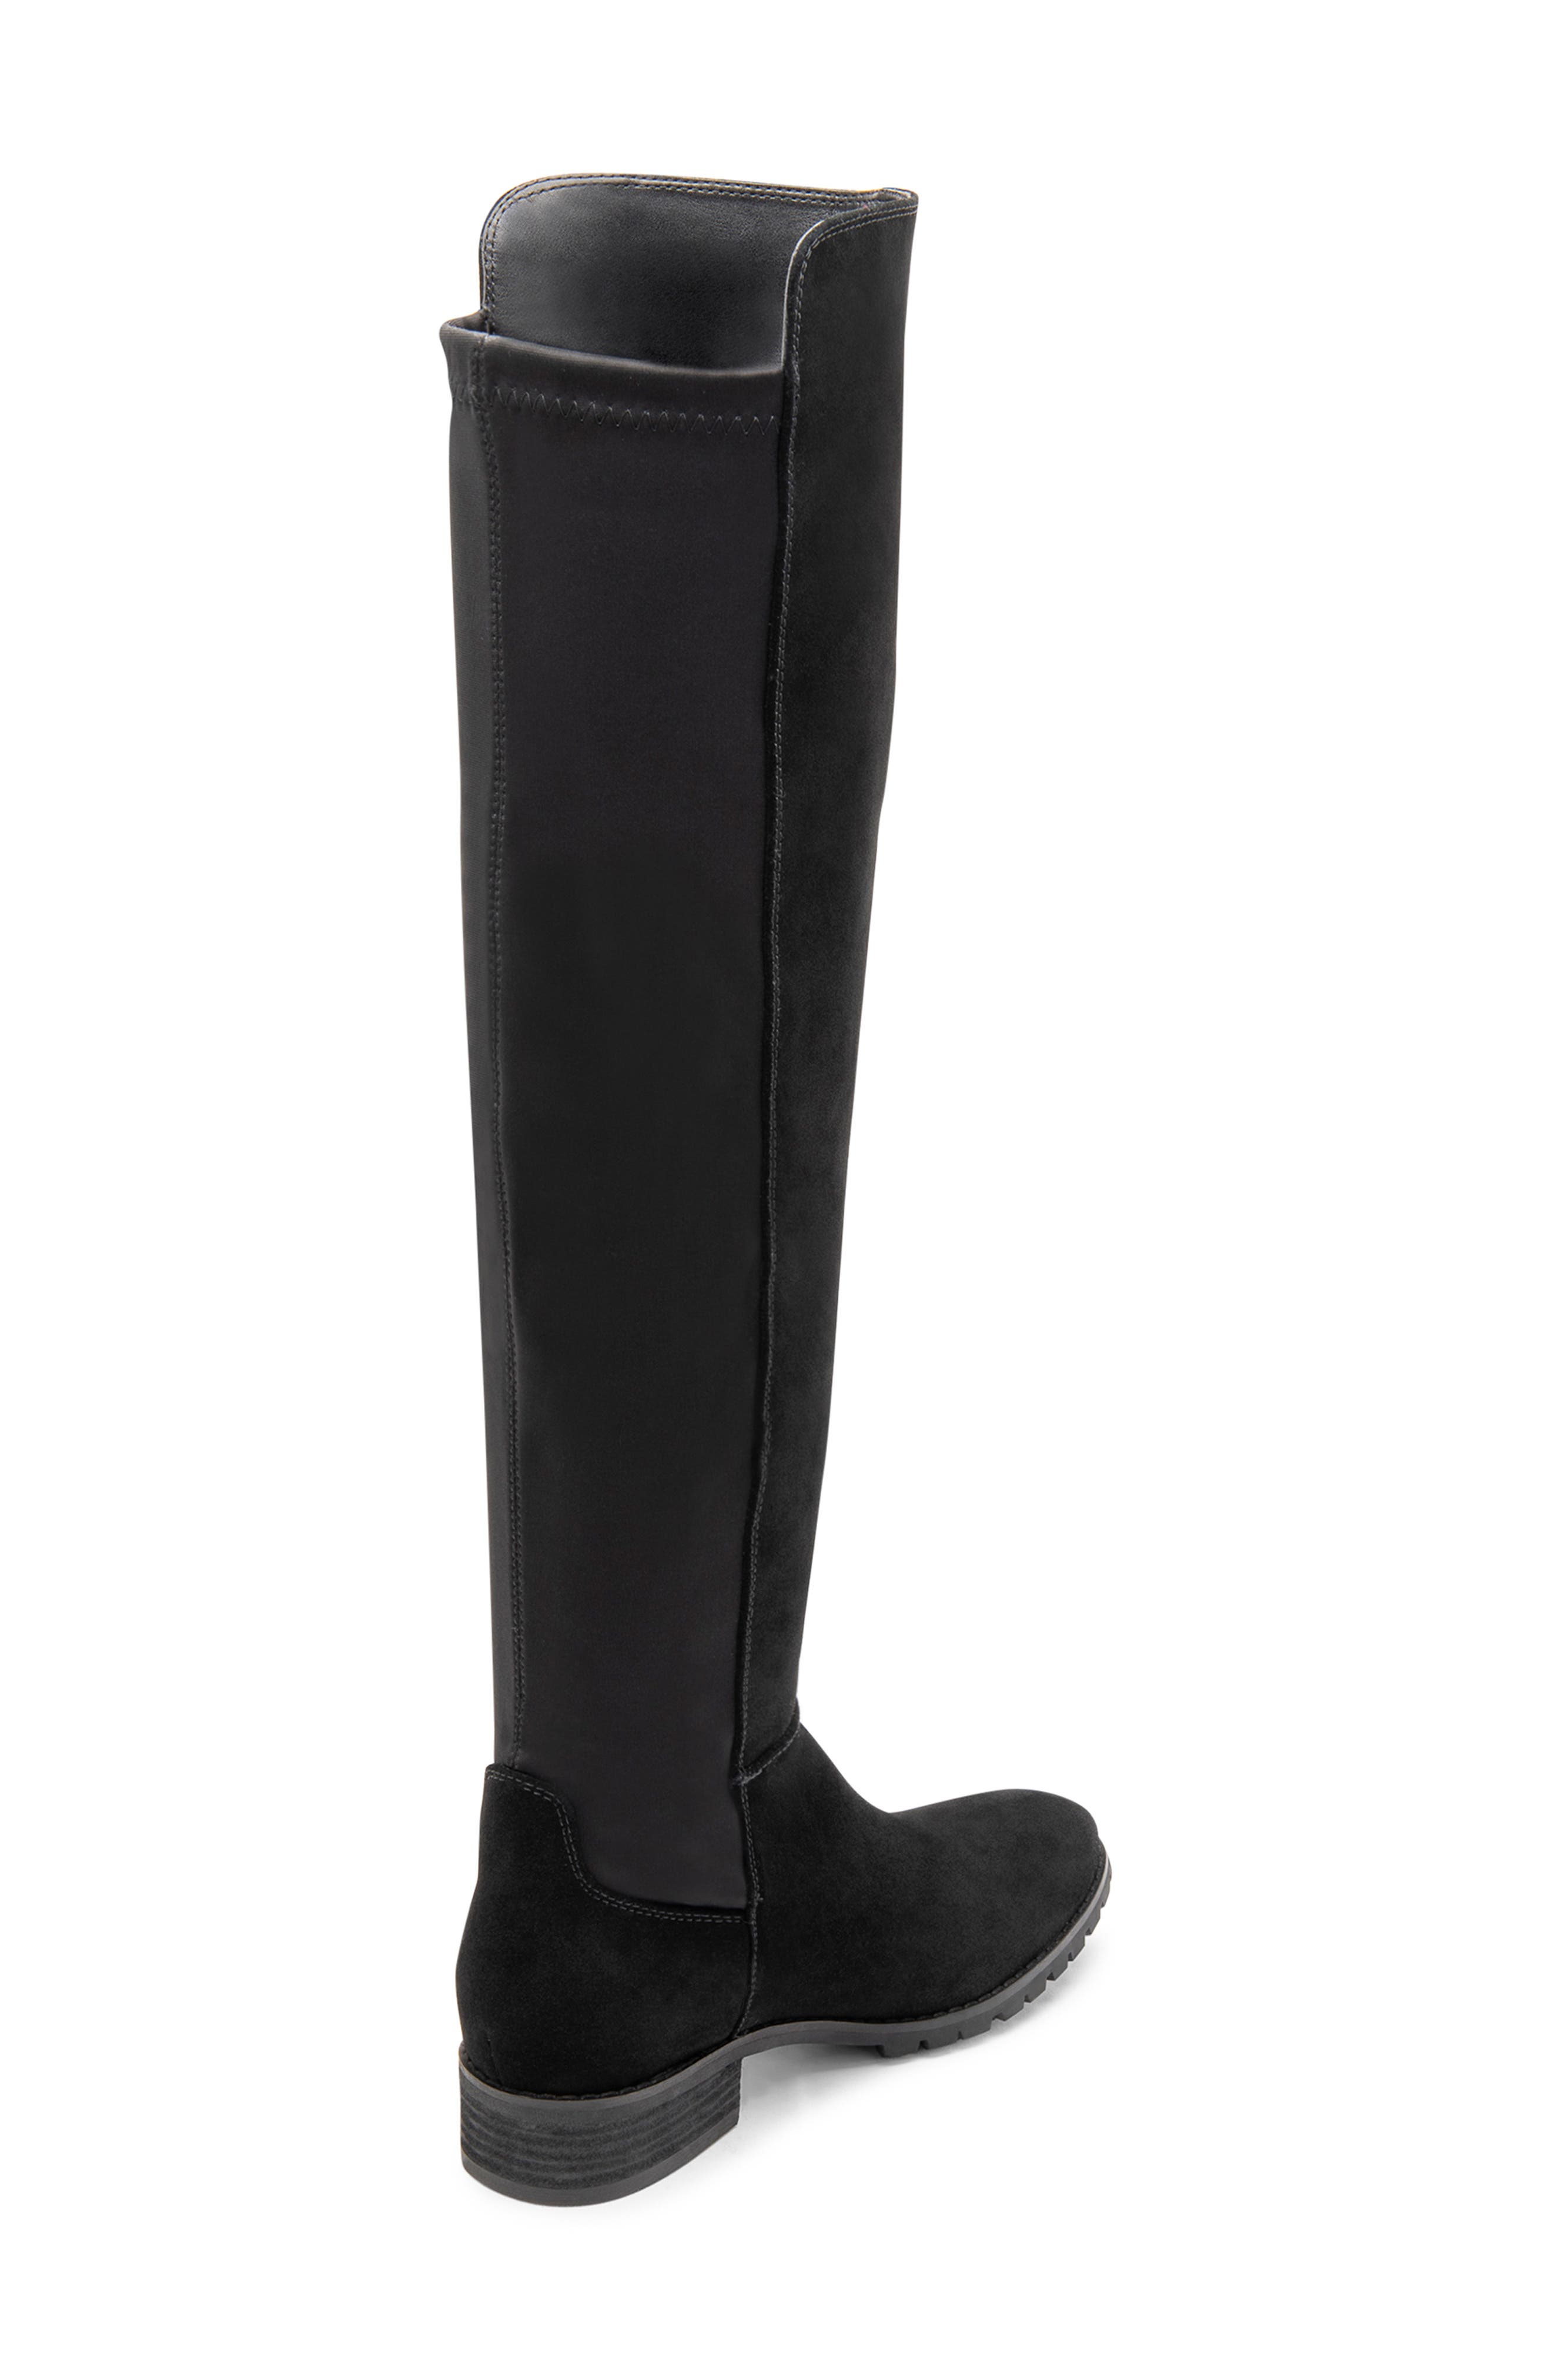 black knee high waterproof boots